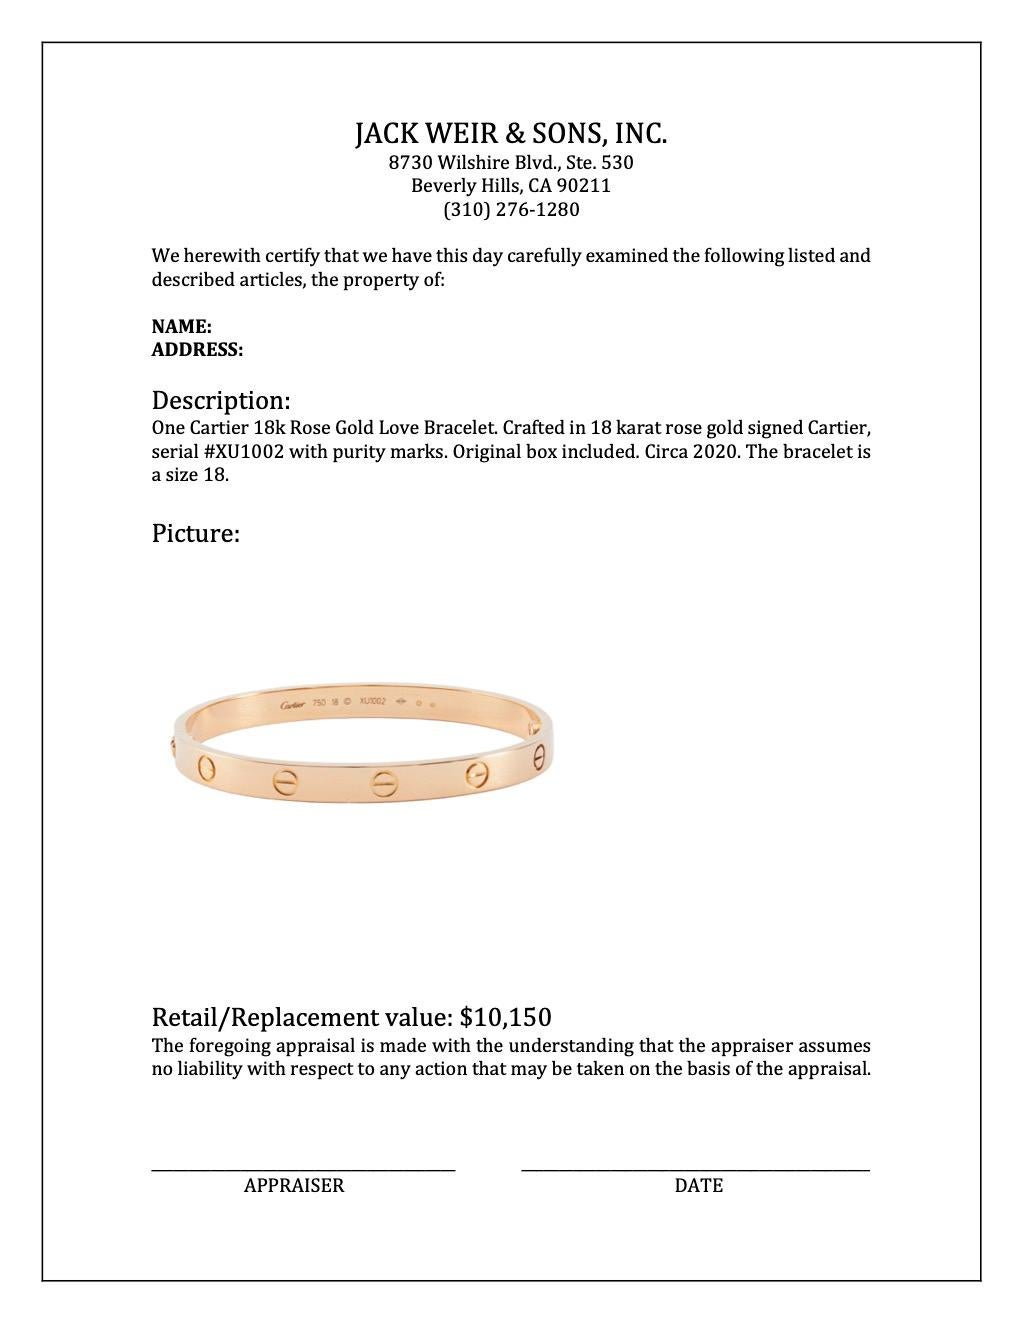 Women's or Men's Cartier 18k Rose Gold Love Bracelet